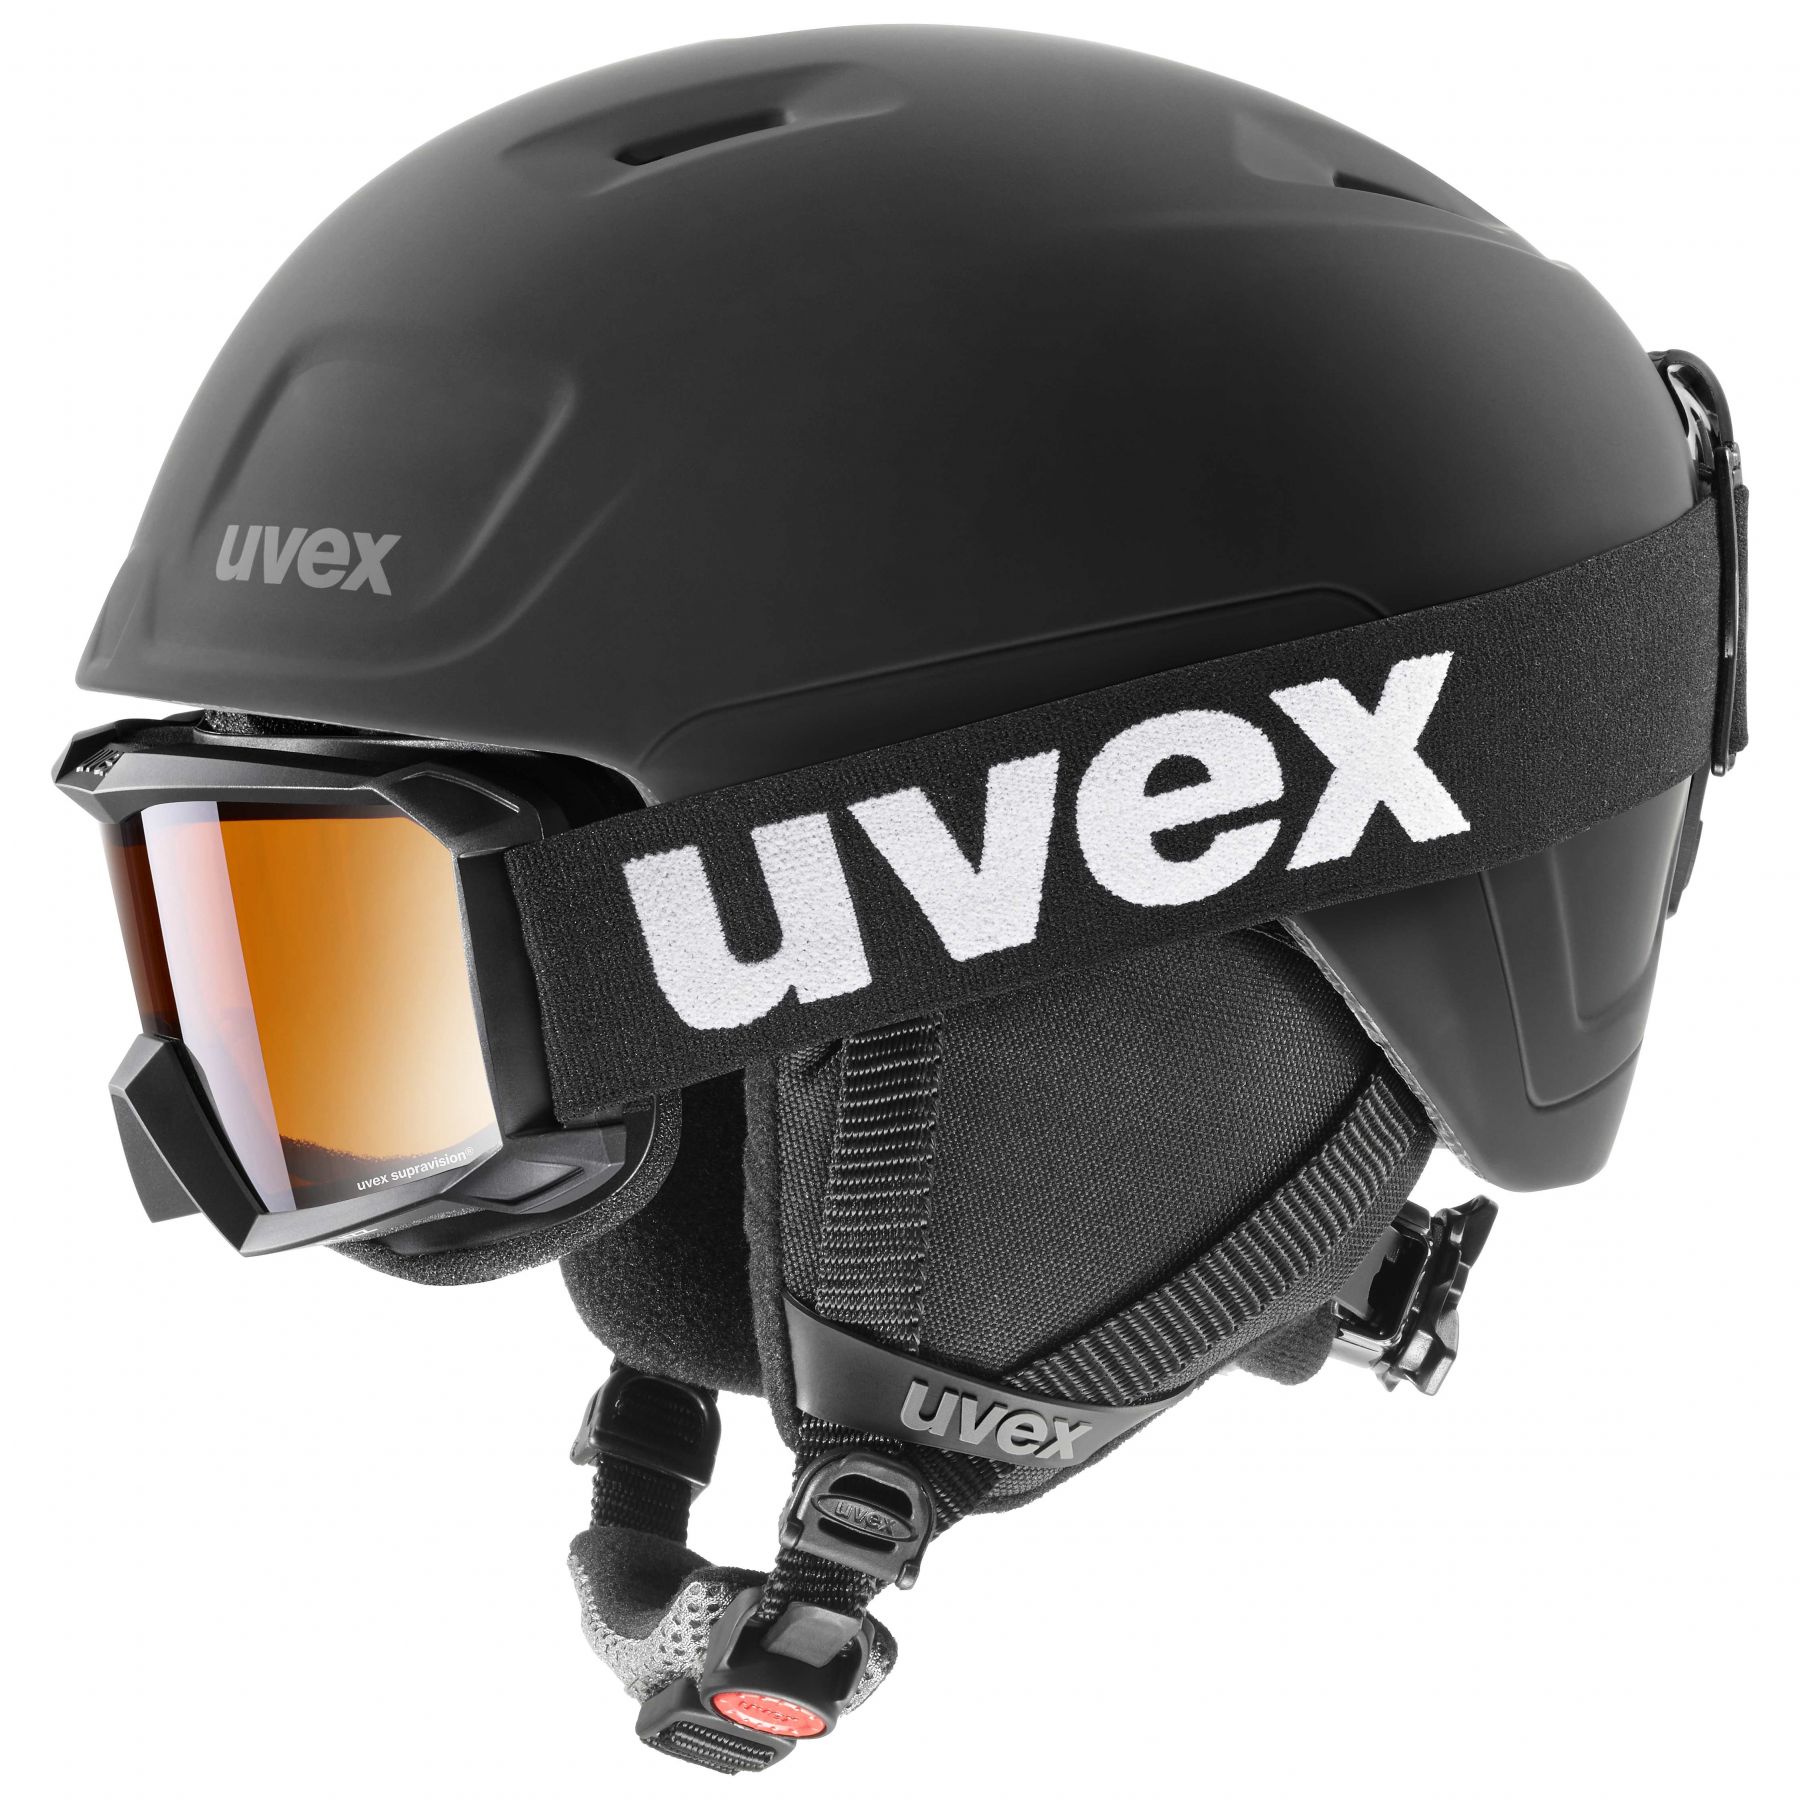 Se Uvex Heyya Pro Set, skihjelm + skibrille, junior, sort hos AktivVinter.dk